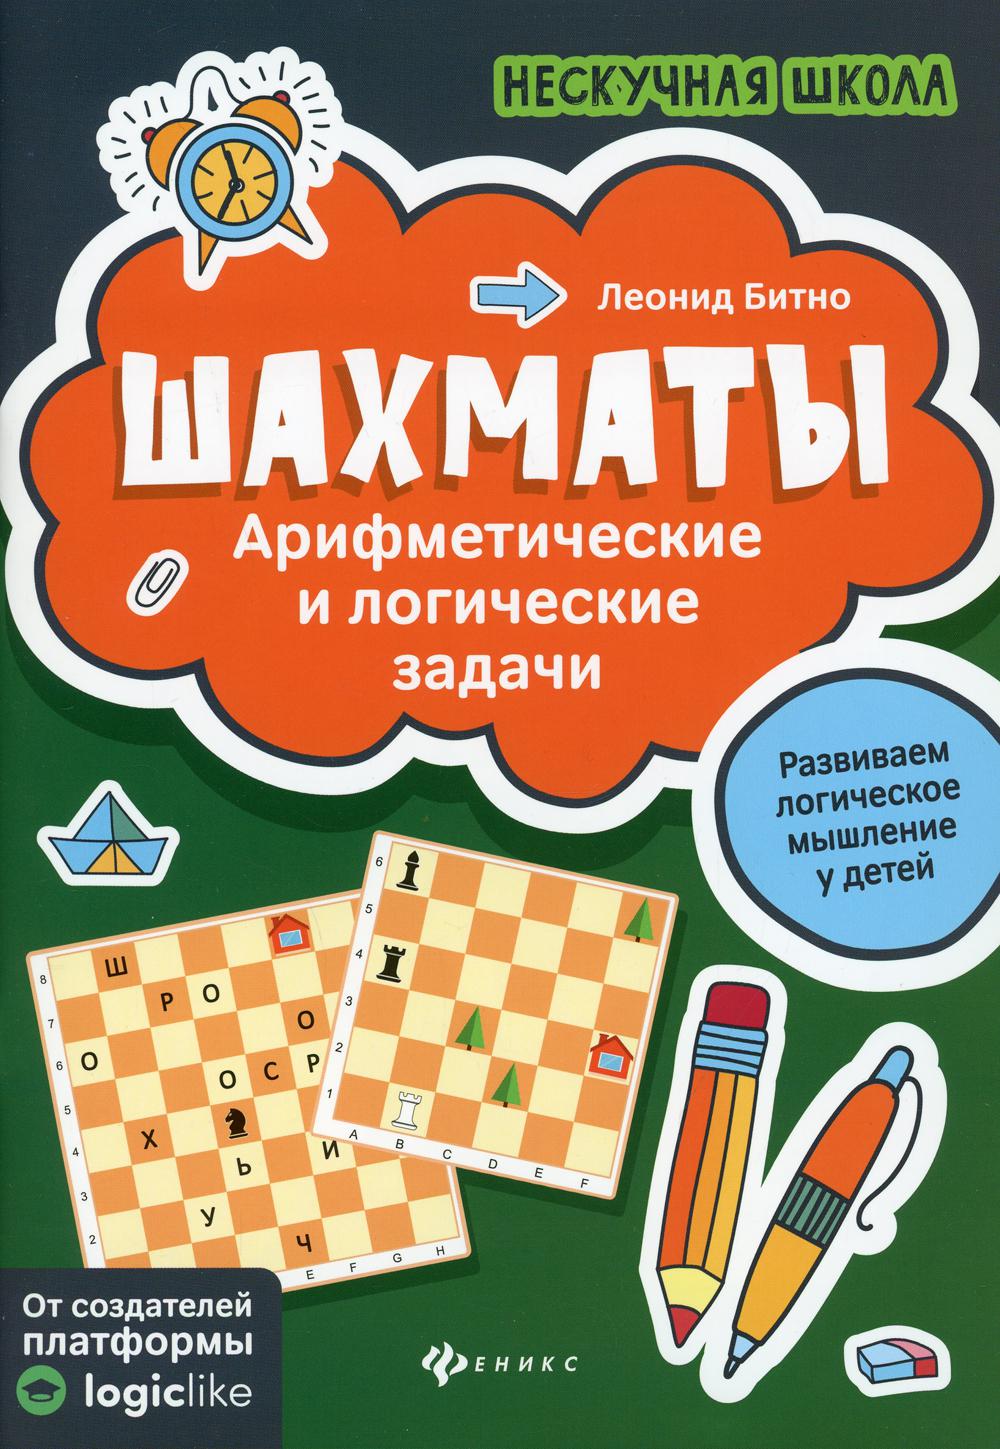 Шахматы: арифметические и логические задачи. 3-е изд